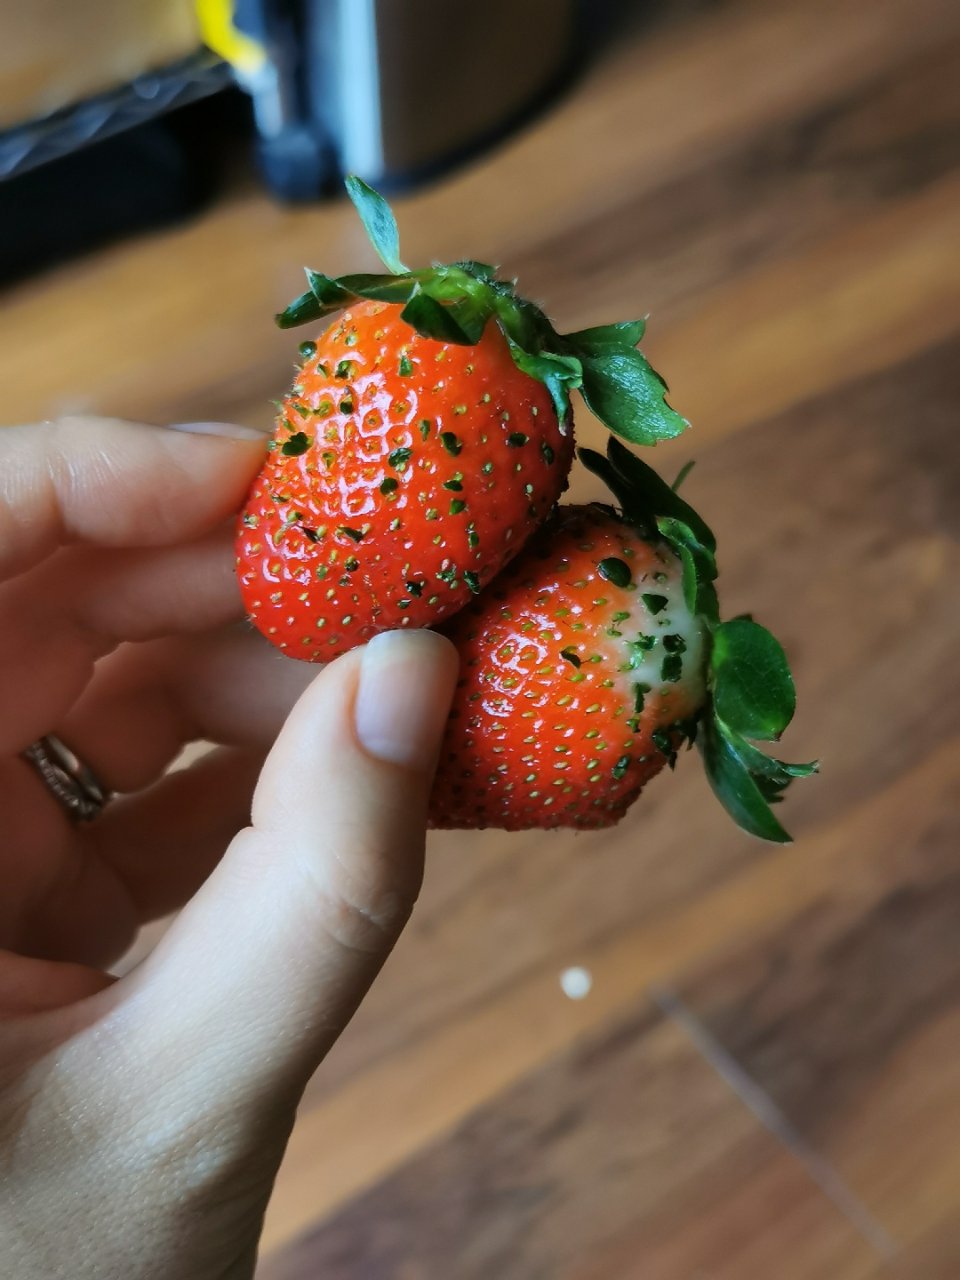 有些奇怪的草莓...